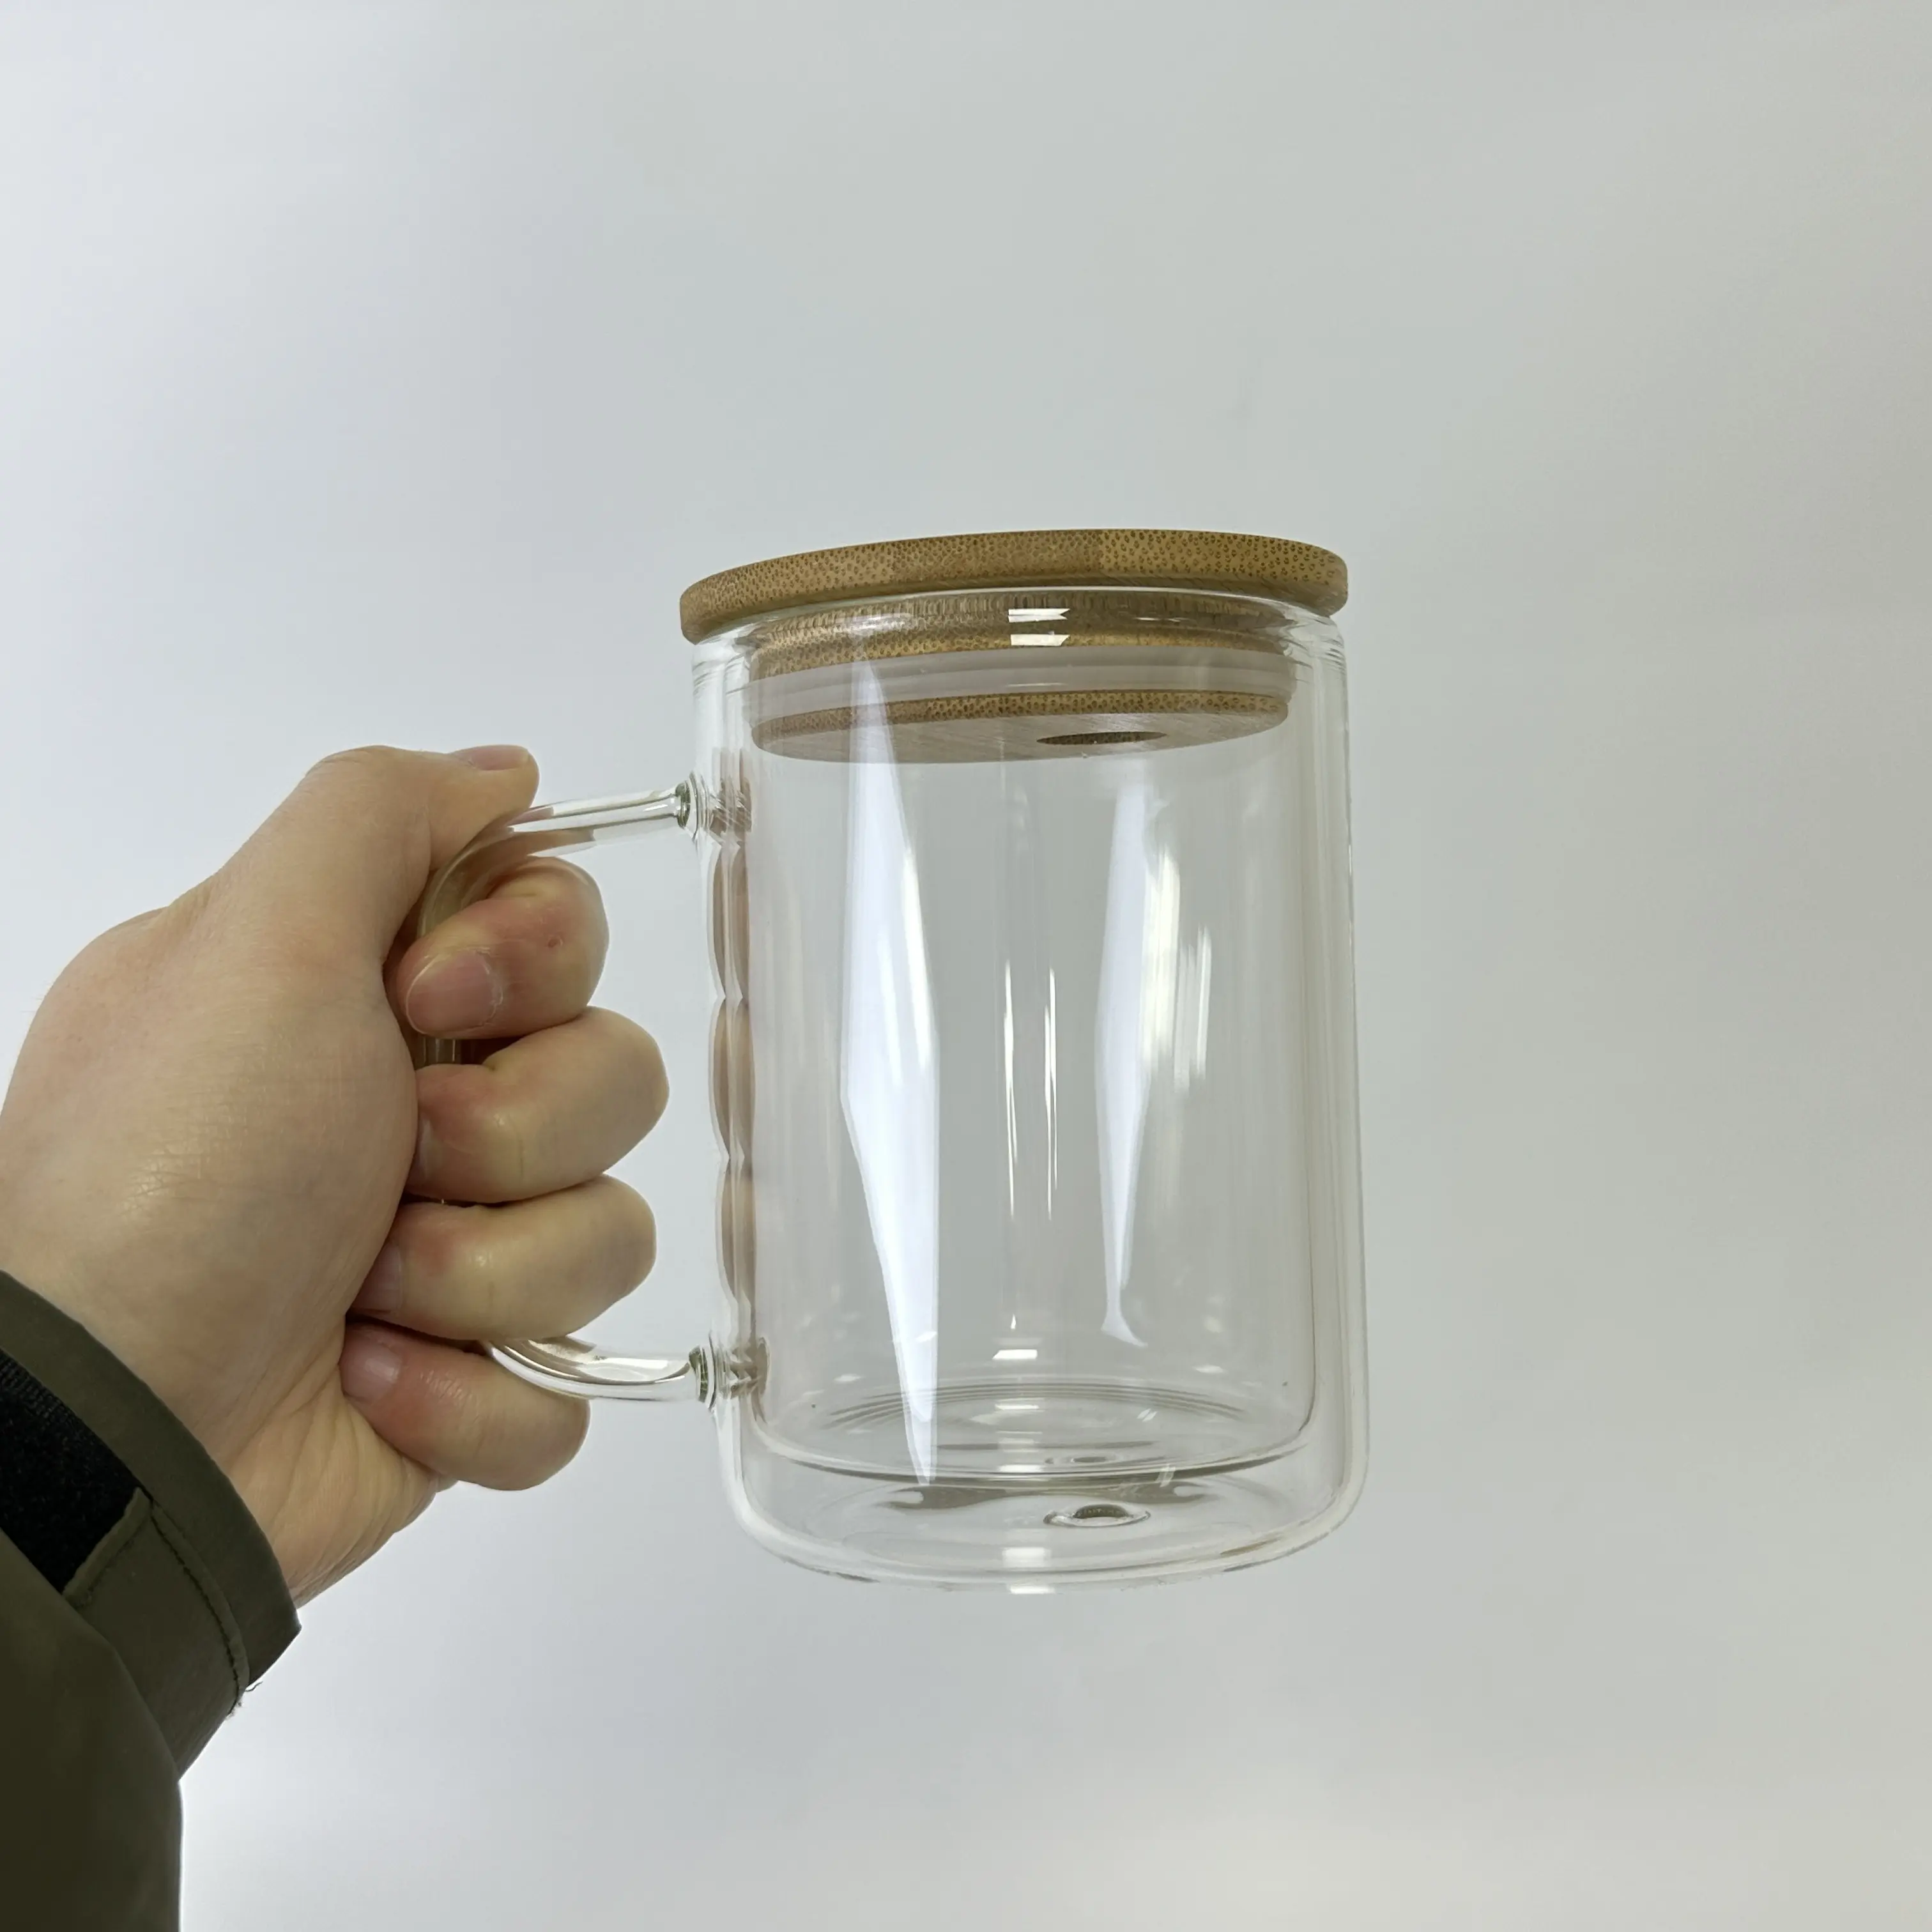 كوب زجاجي على شكل كرة ثلوج من اصنعها بنفسك بمقبض, كوب زجاجي بلورية شفافة يمكن تعليقها بنفسك ، 15 أونصة ، متوفرة في المخزن الأمريكي